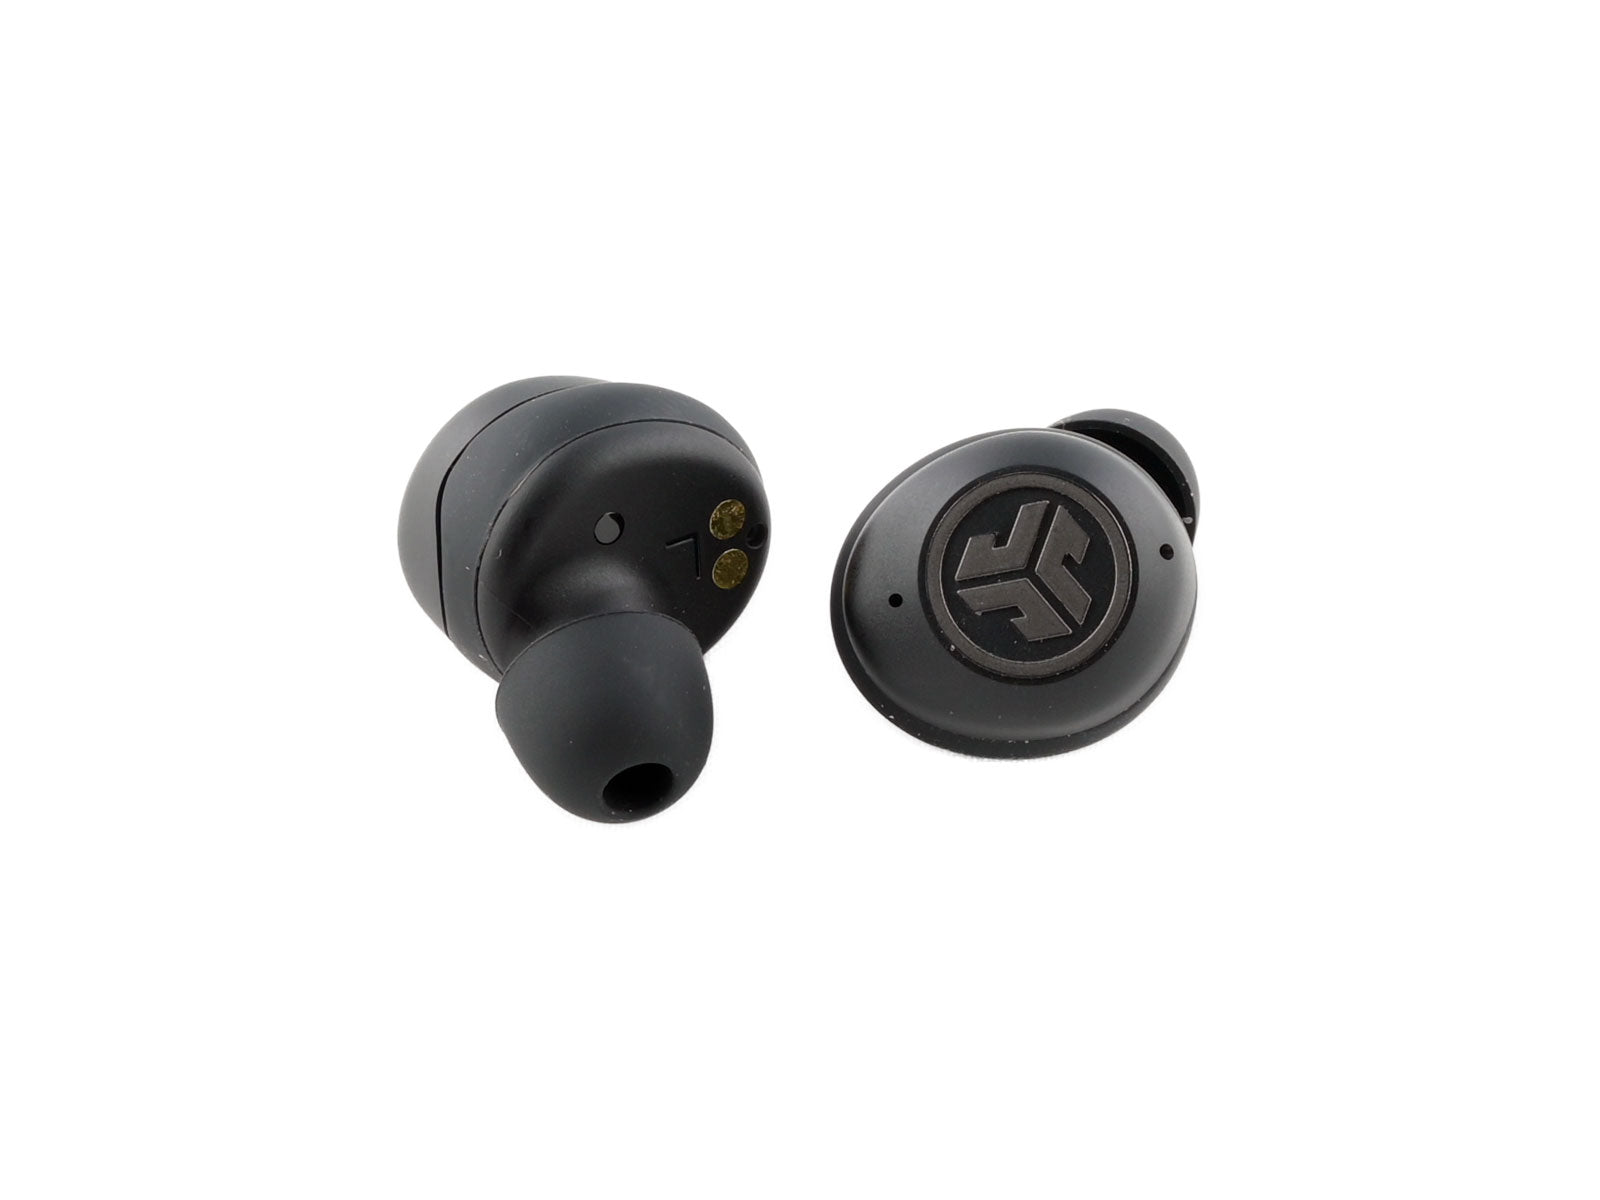 JLab JBuds Air ANC True Wireless Earbuds In-Ear Kopfhörer Vor einem weißen Hintergrund werden zwei schwarze kabellose Ohrhörer angezeigt; Ein Ohrhörer zeigt Ladekontakte, während der andere über eine Logo verfügt.